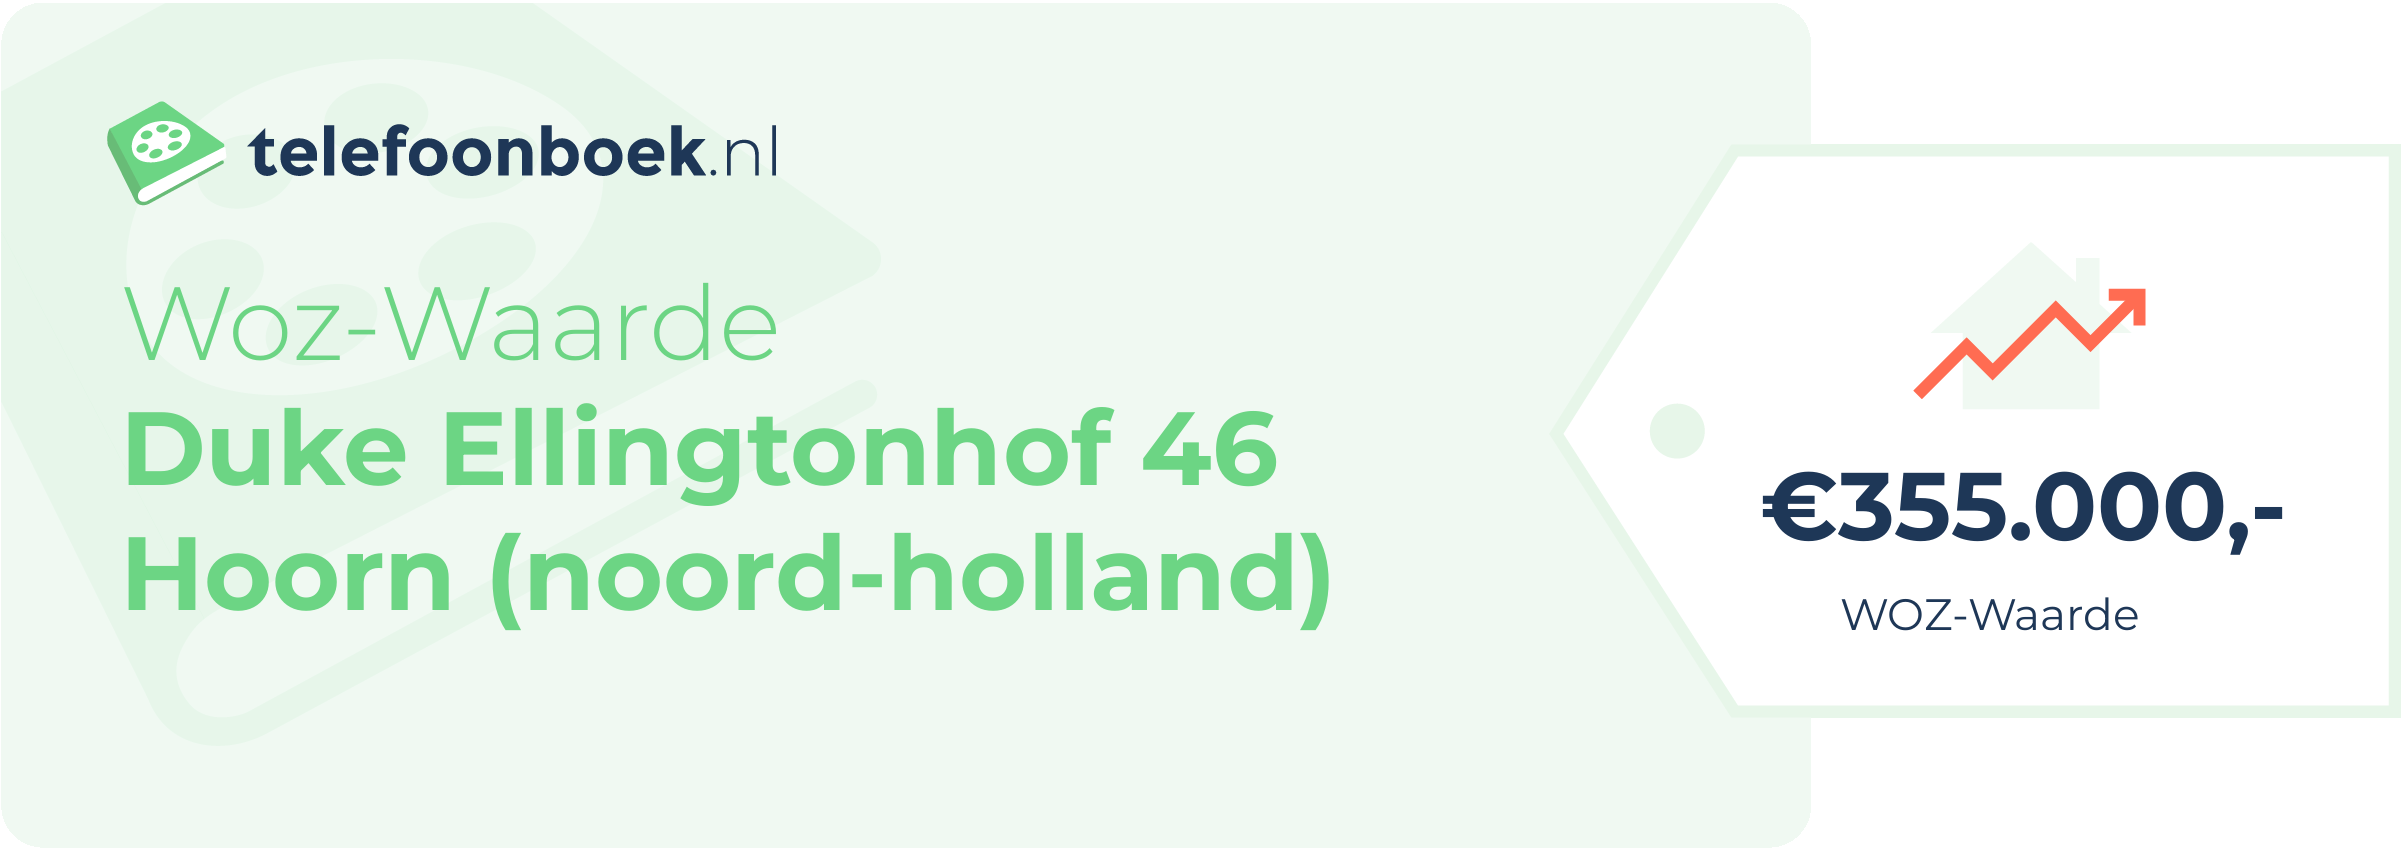 WOZ-waarde Duke Ellingtonhof 46 Hoorn (Noord-Holland)